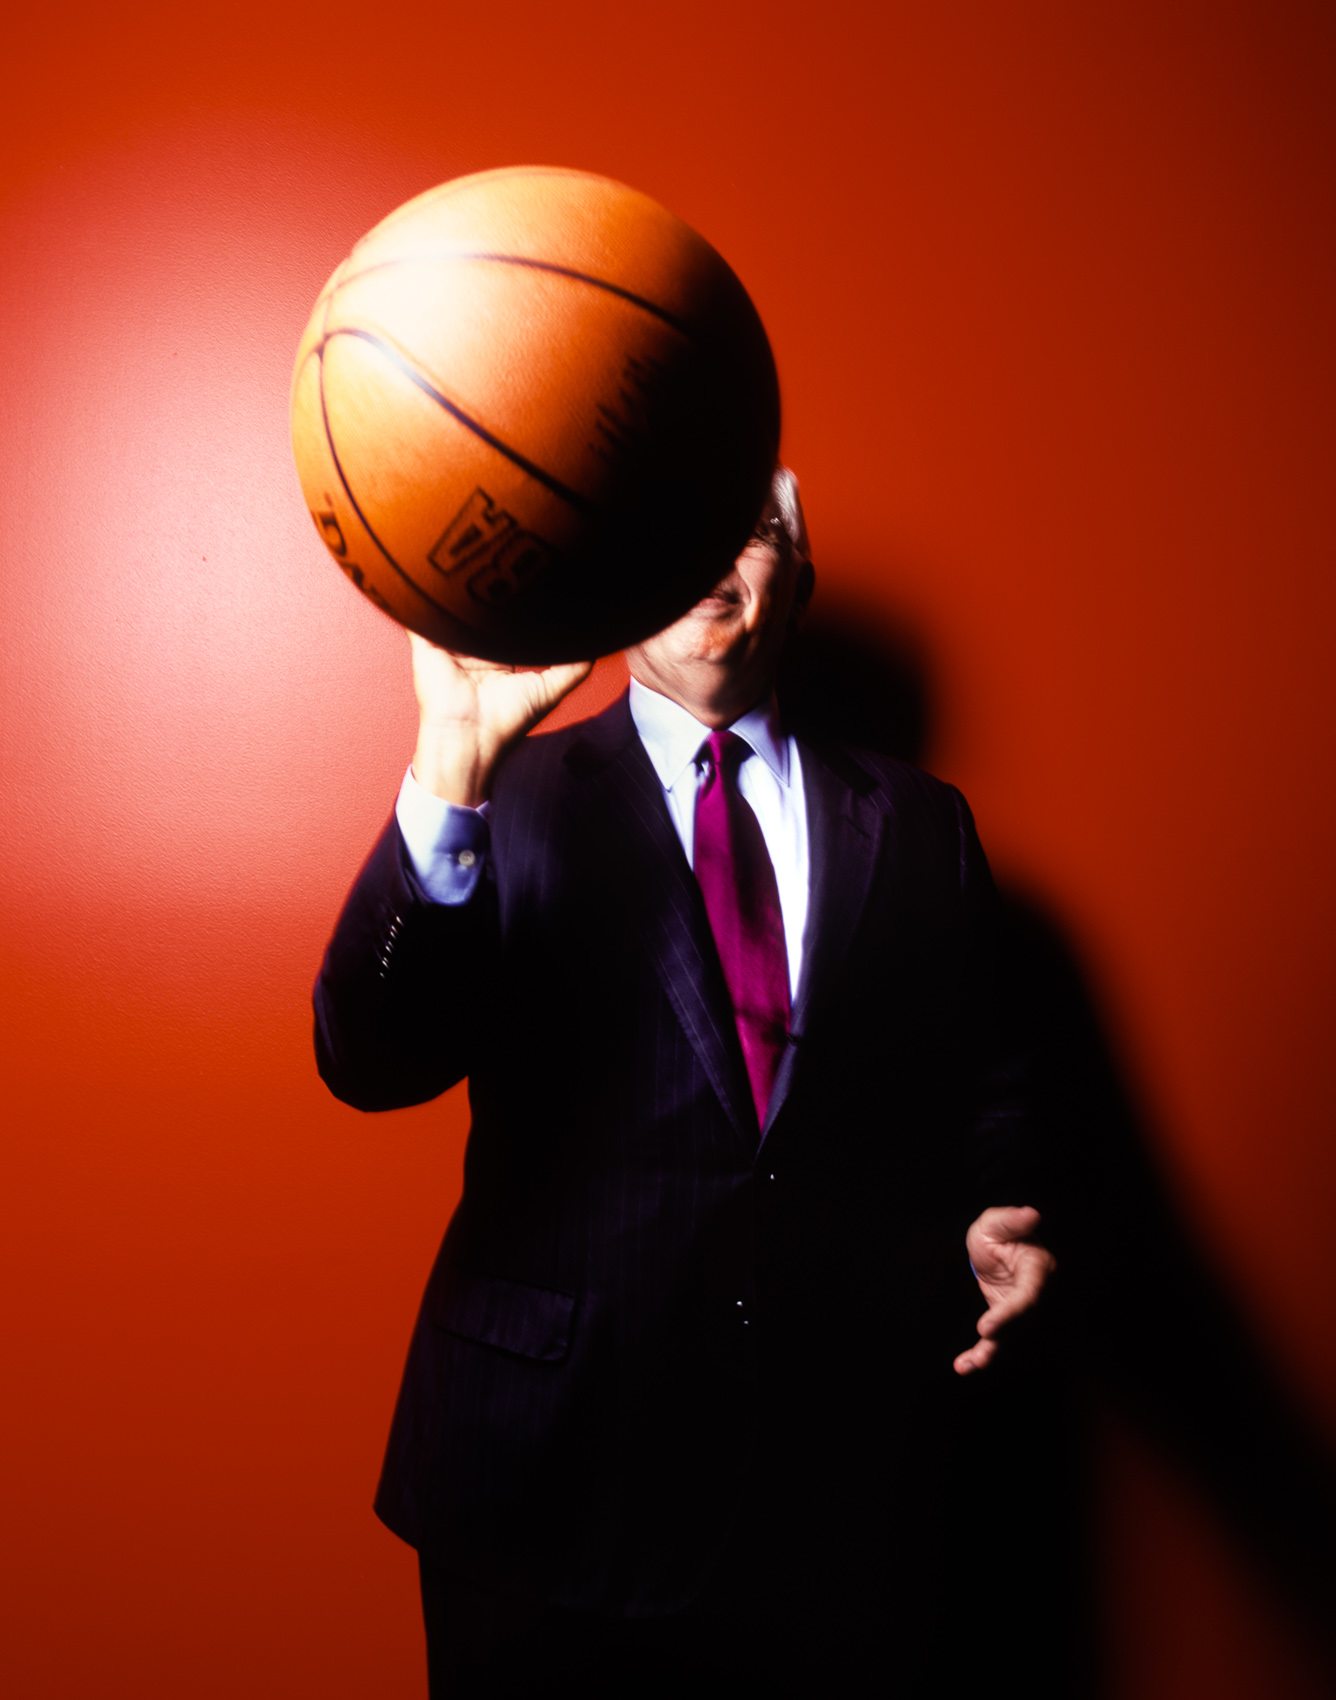 David Stern / NBA Commissioner